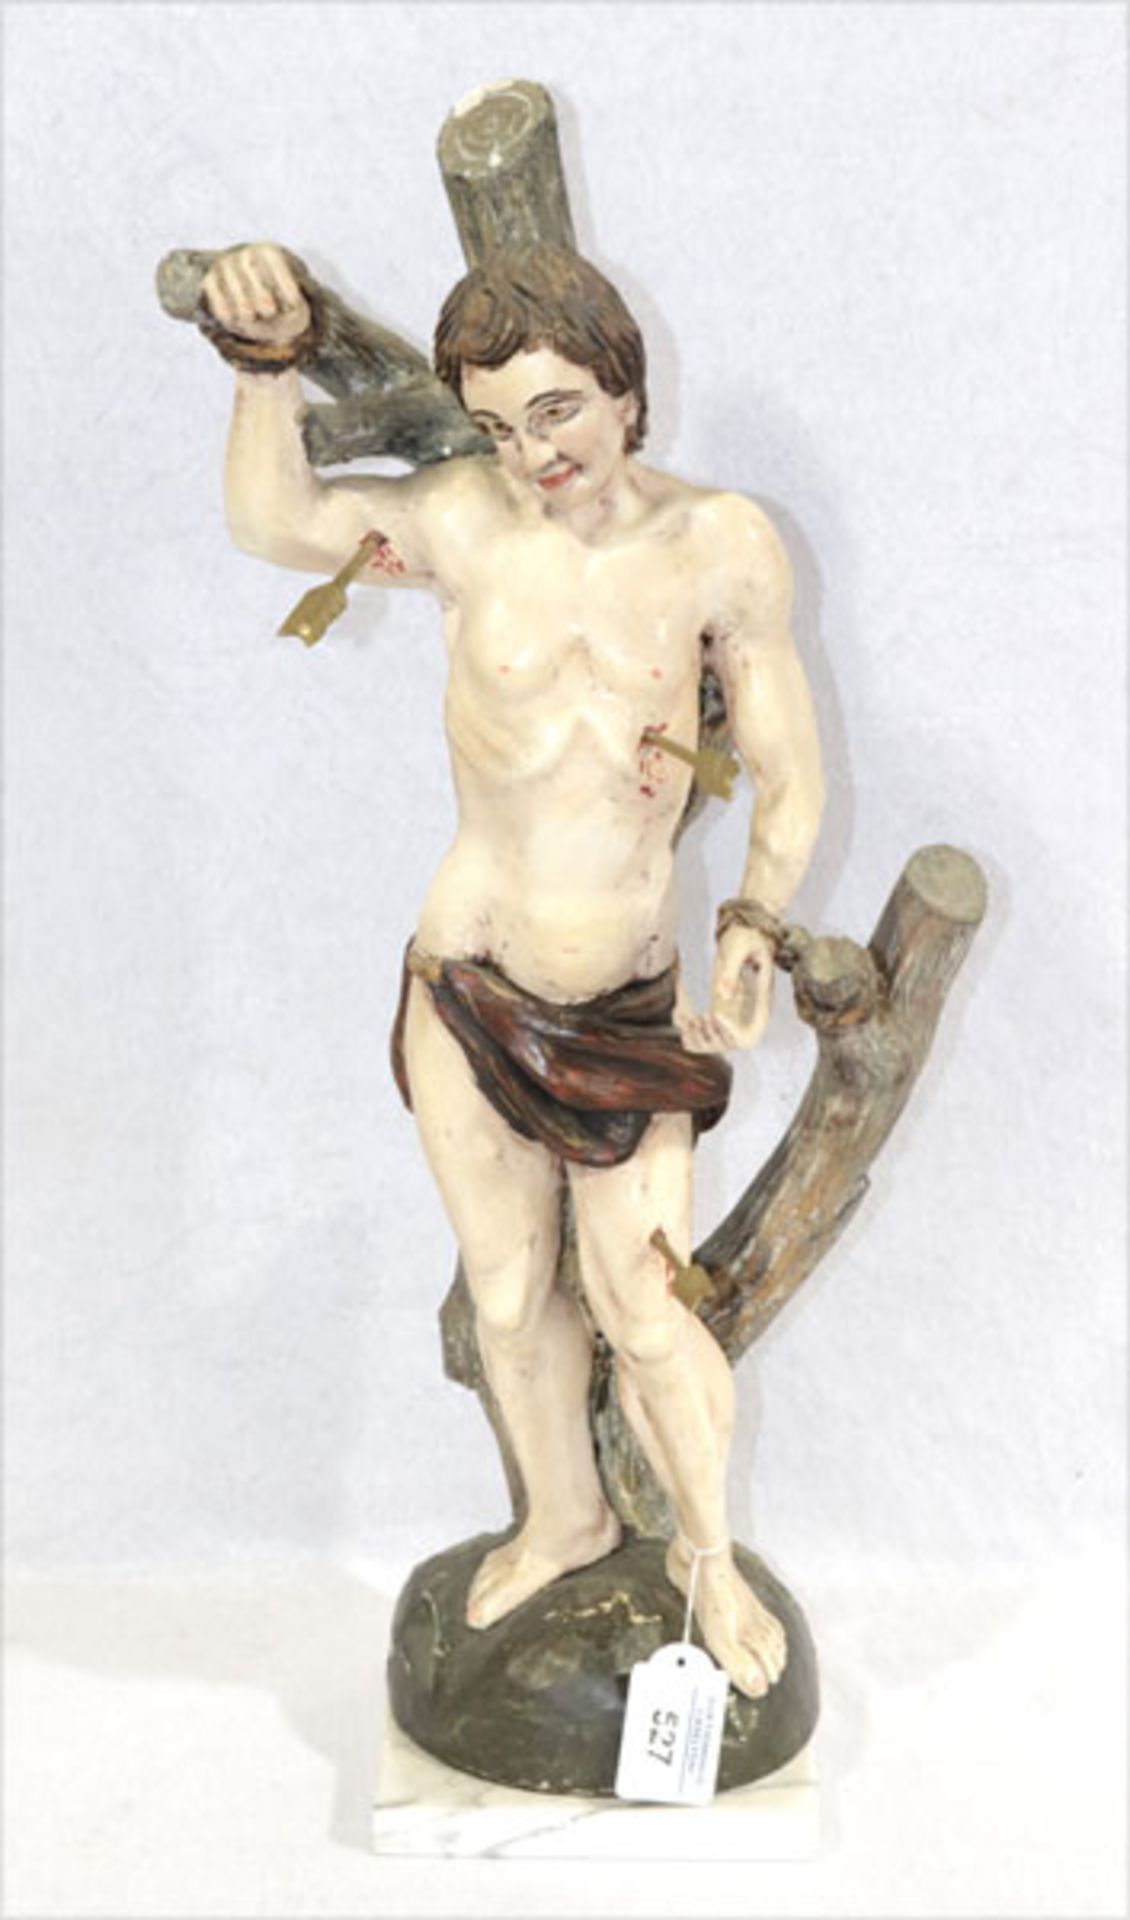 Holz Figurenskulptur 'Hl. Sebastian', farbig gefaßt, Farbablösungen, auf Marmorplatte, H 54 cm,